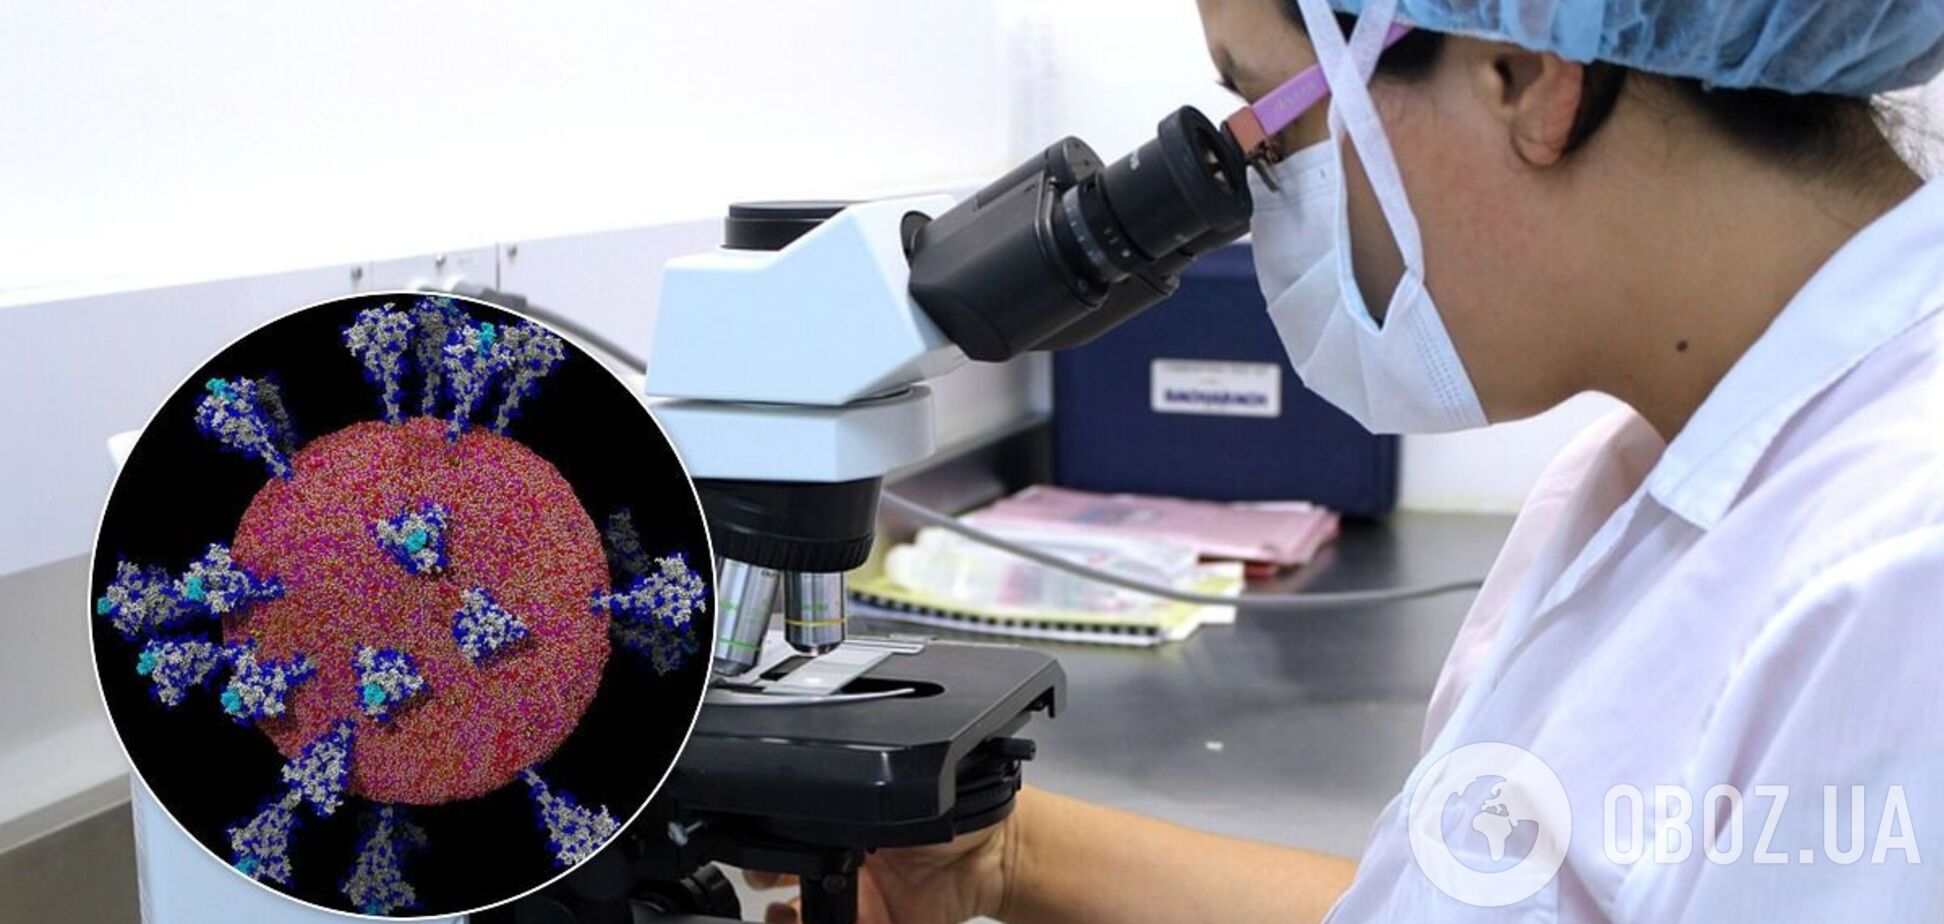 Биологи получили новые подробные изображения коронавируса